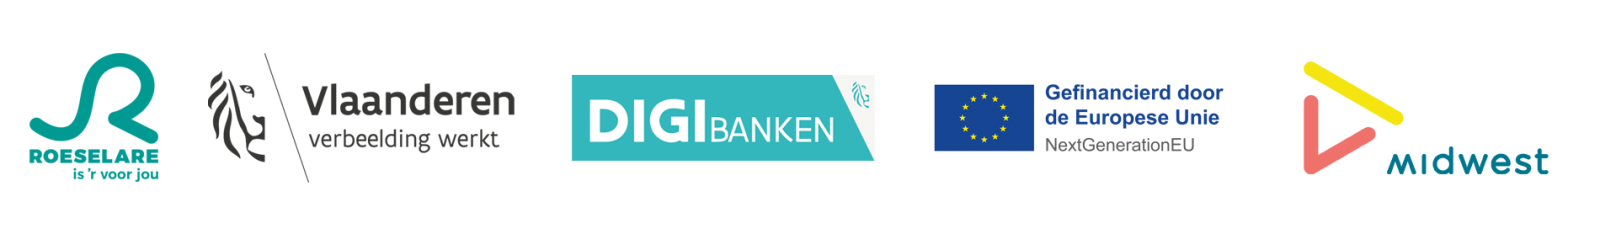 logo's Stad Roeselare, Vlaanderen Verbeelding werkt, DIGIbanken, Gefinancieerd door de Europese Unie NextGenerationEU, Midwest